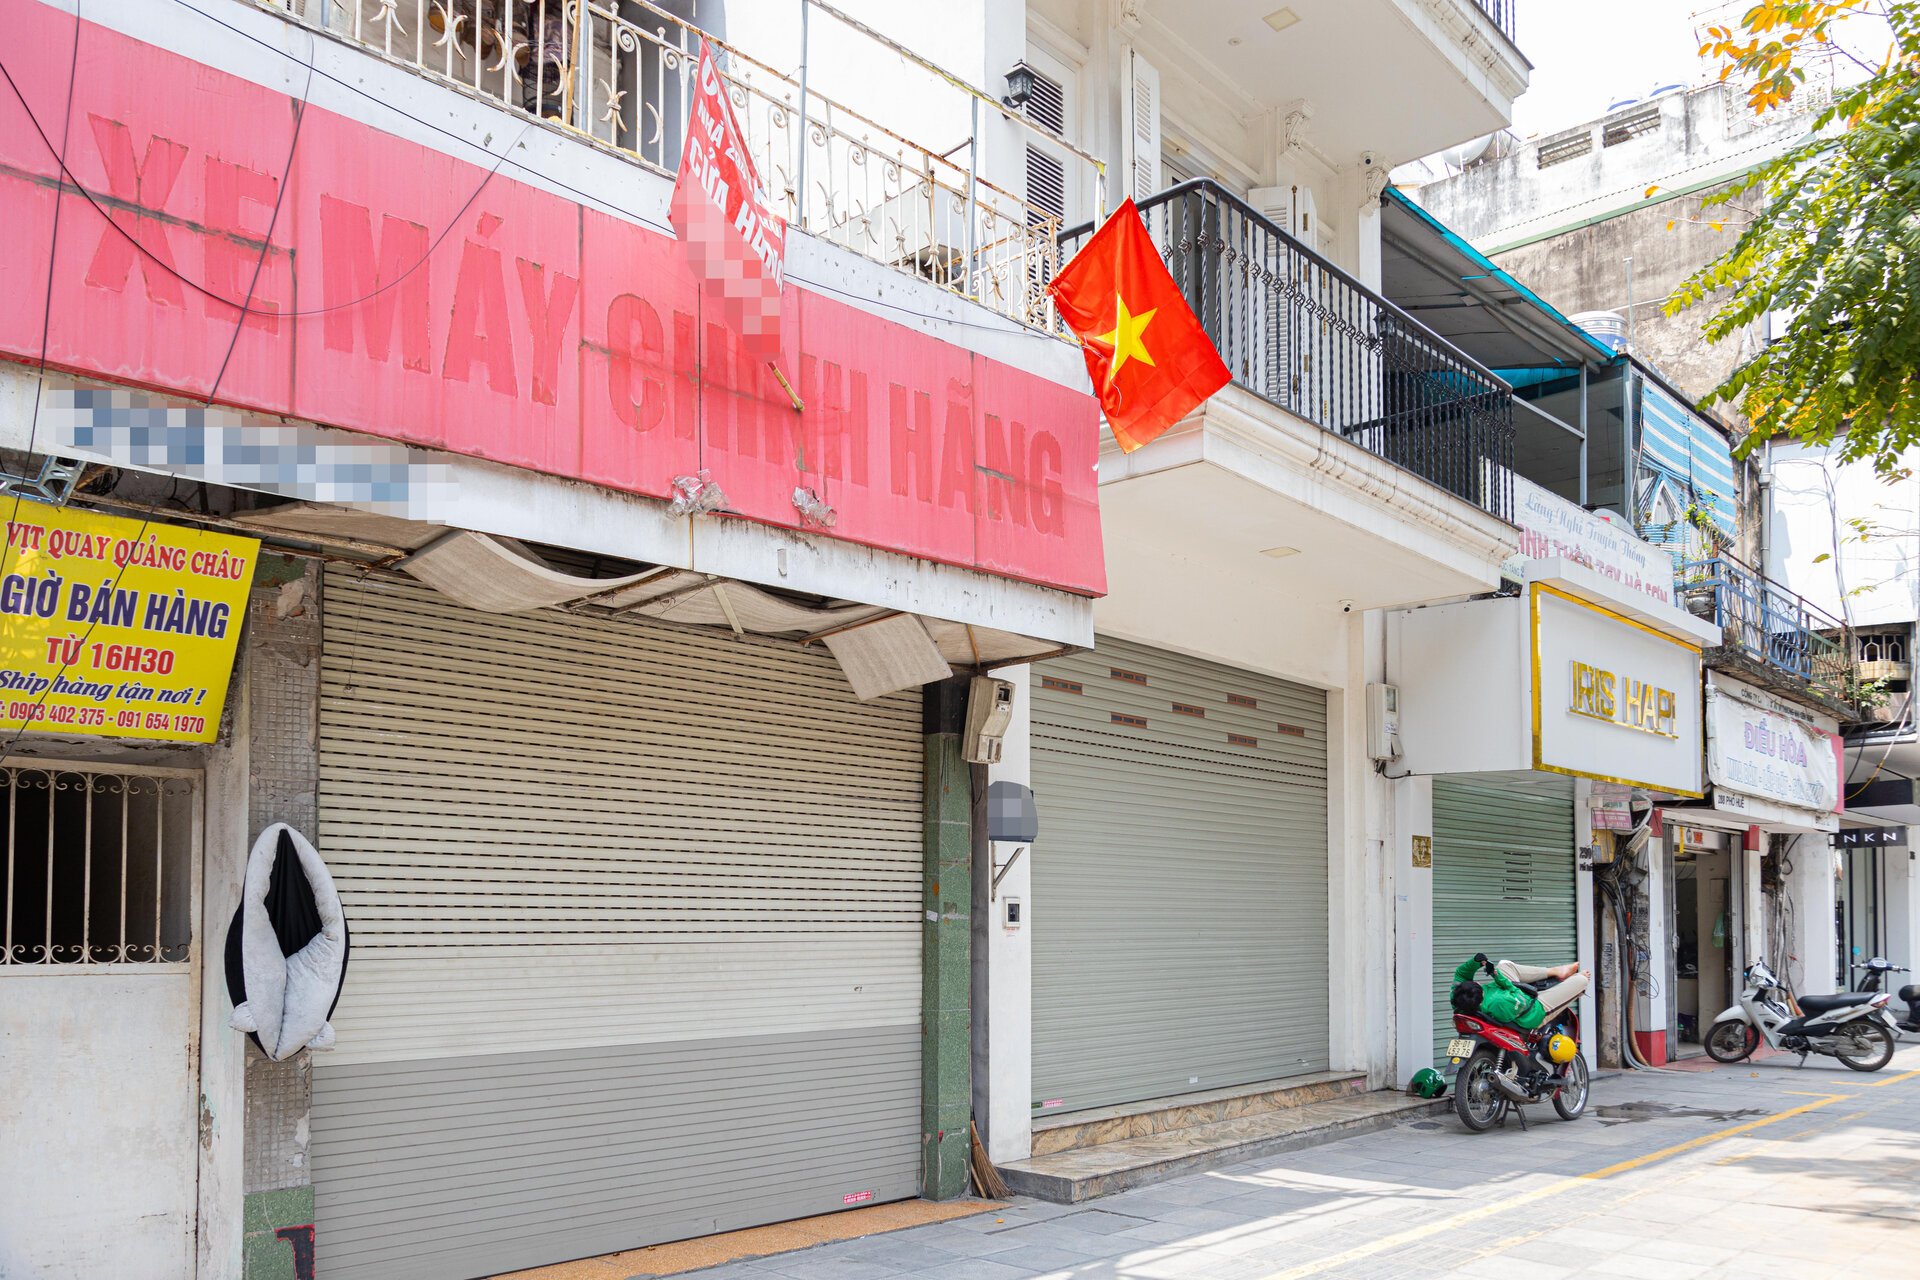 Hàng chục cửa hàng trên đất vàng phố Huế, Hà Nội đóng cửa, treo biển cho thuê - Ảnh 5.